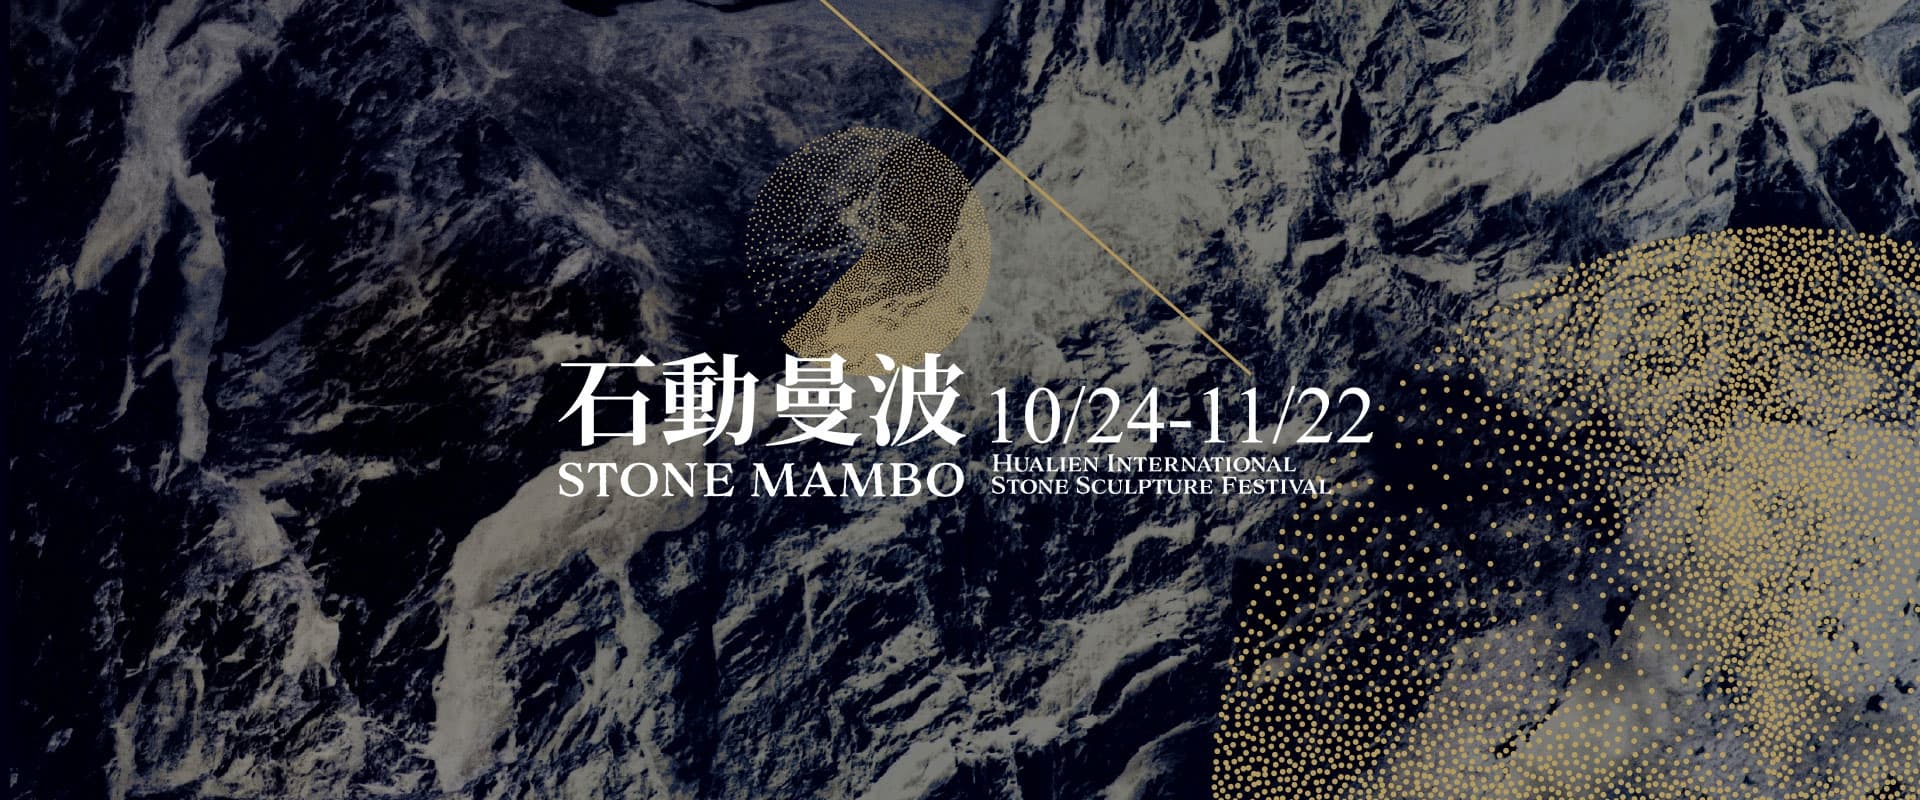 2020花蓮國際石雕藝術季，「石動曼波」2020-10-24~2020-11-22。